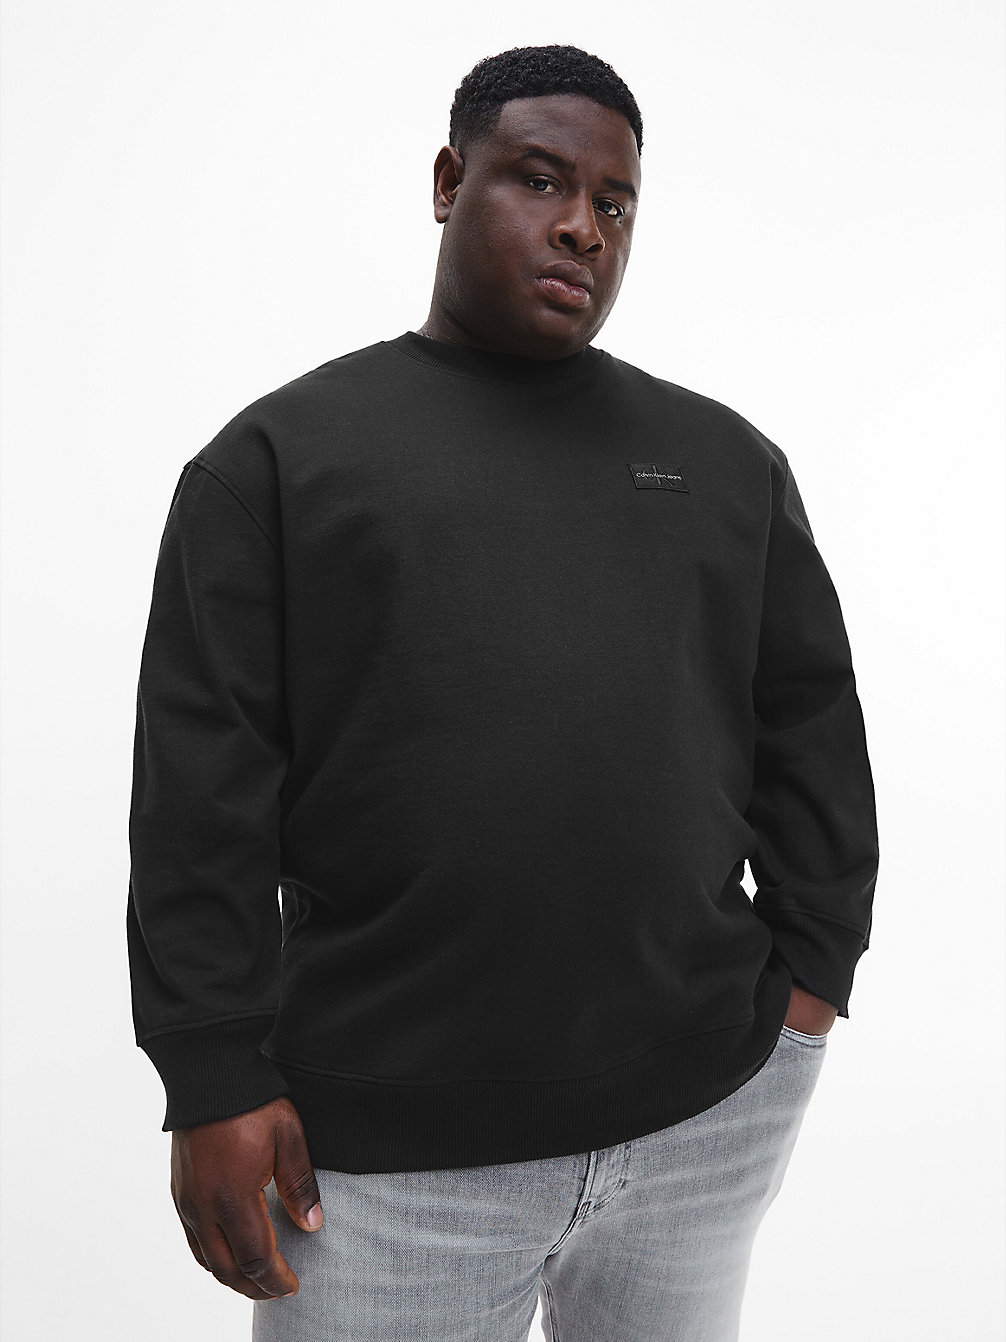 CK BLACK Sweatshirt Aus Recycelter Baumwolle In Großen Größen undefined Herren Calvin Klein